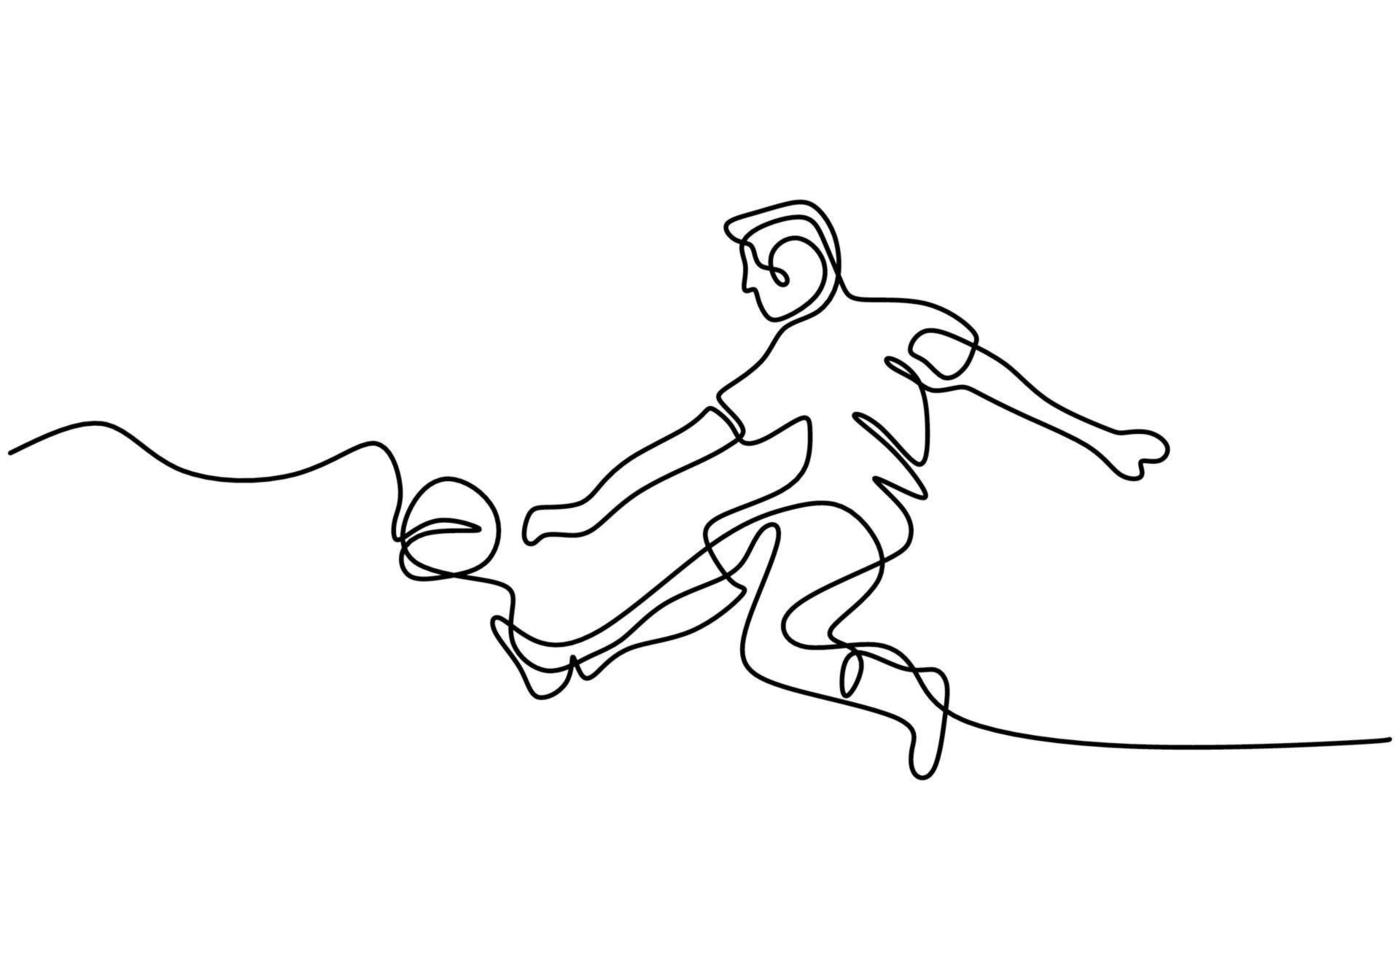 continua una linea che disegna un calciatore maschio in pantaloncini calcia il pallone. giovane ragazzo energico che gioca a calcio con stile libero. concetto di sport partita di calcio. illustrazione di design minimalismo vettoriale